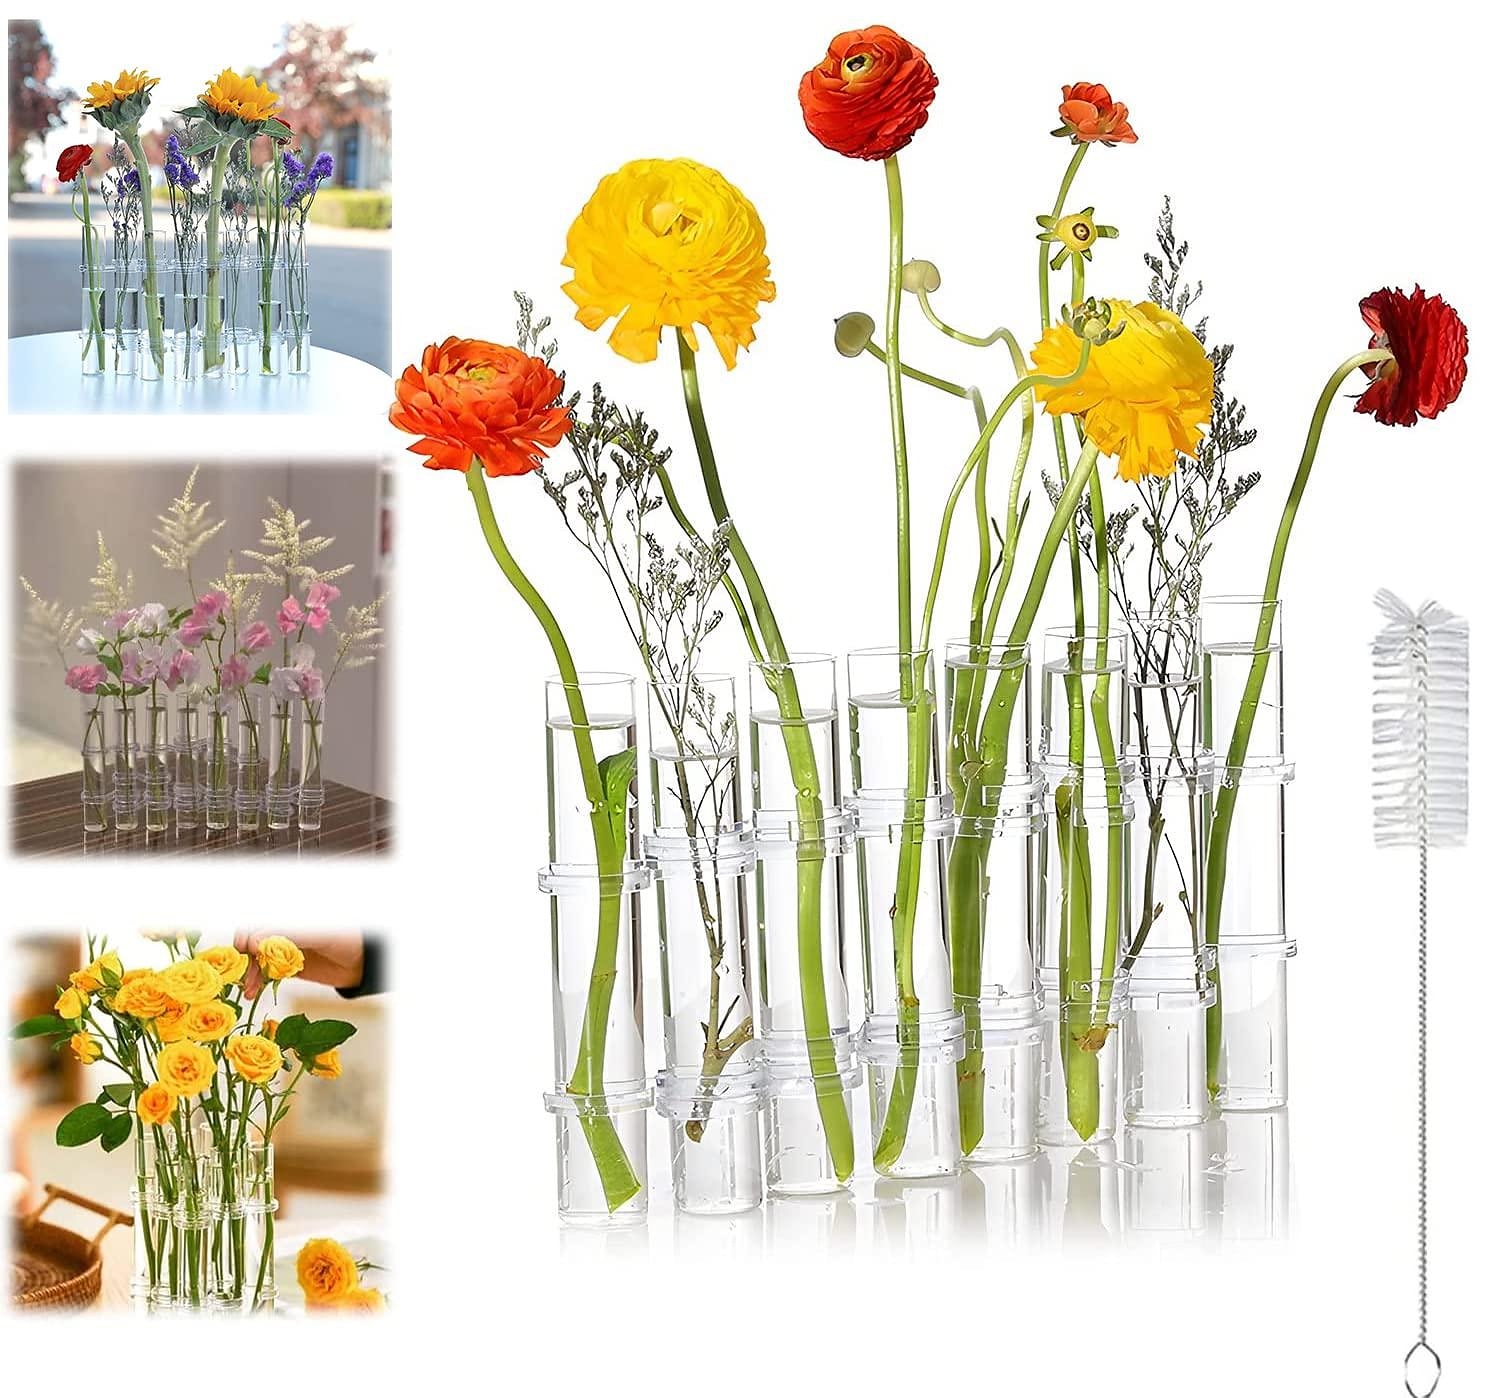 Hinged Flower Vase Test Tube Flower Vase Test Tube Vase